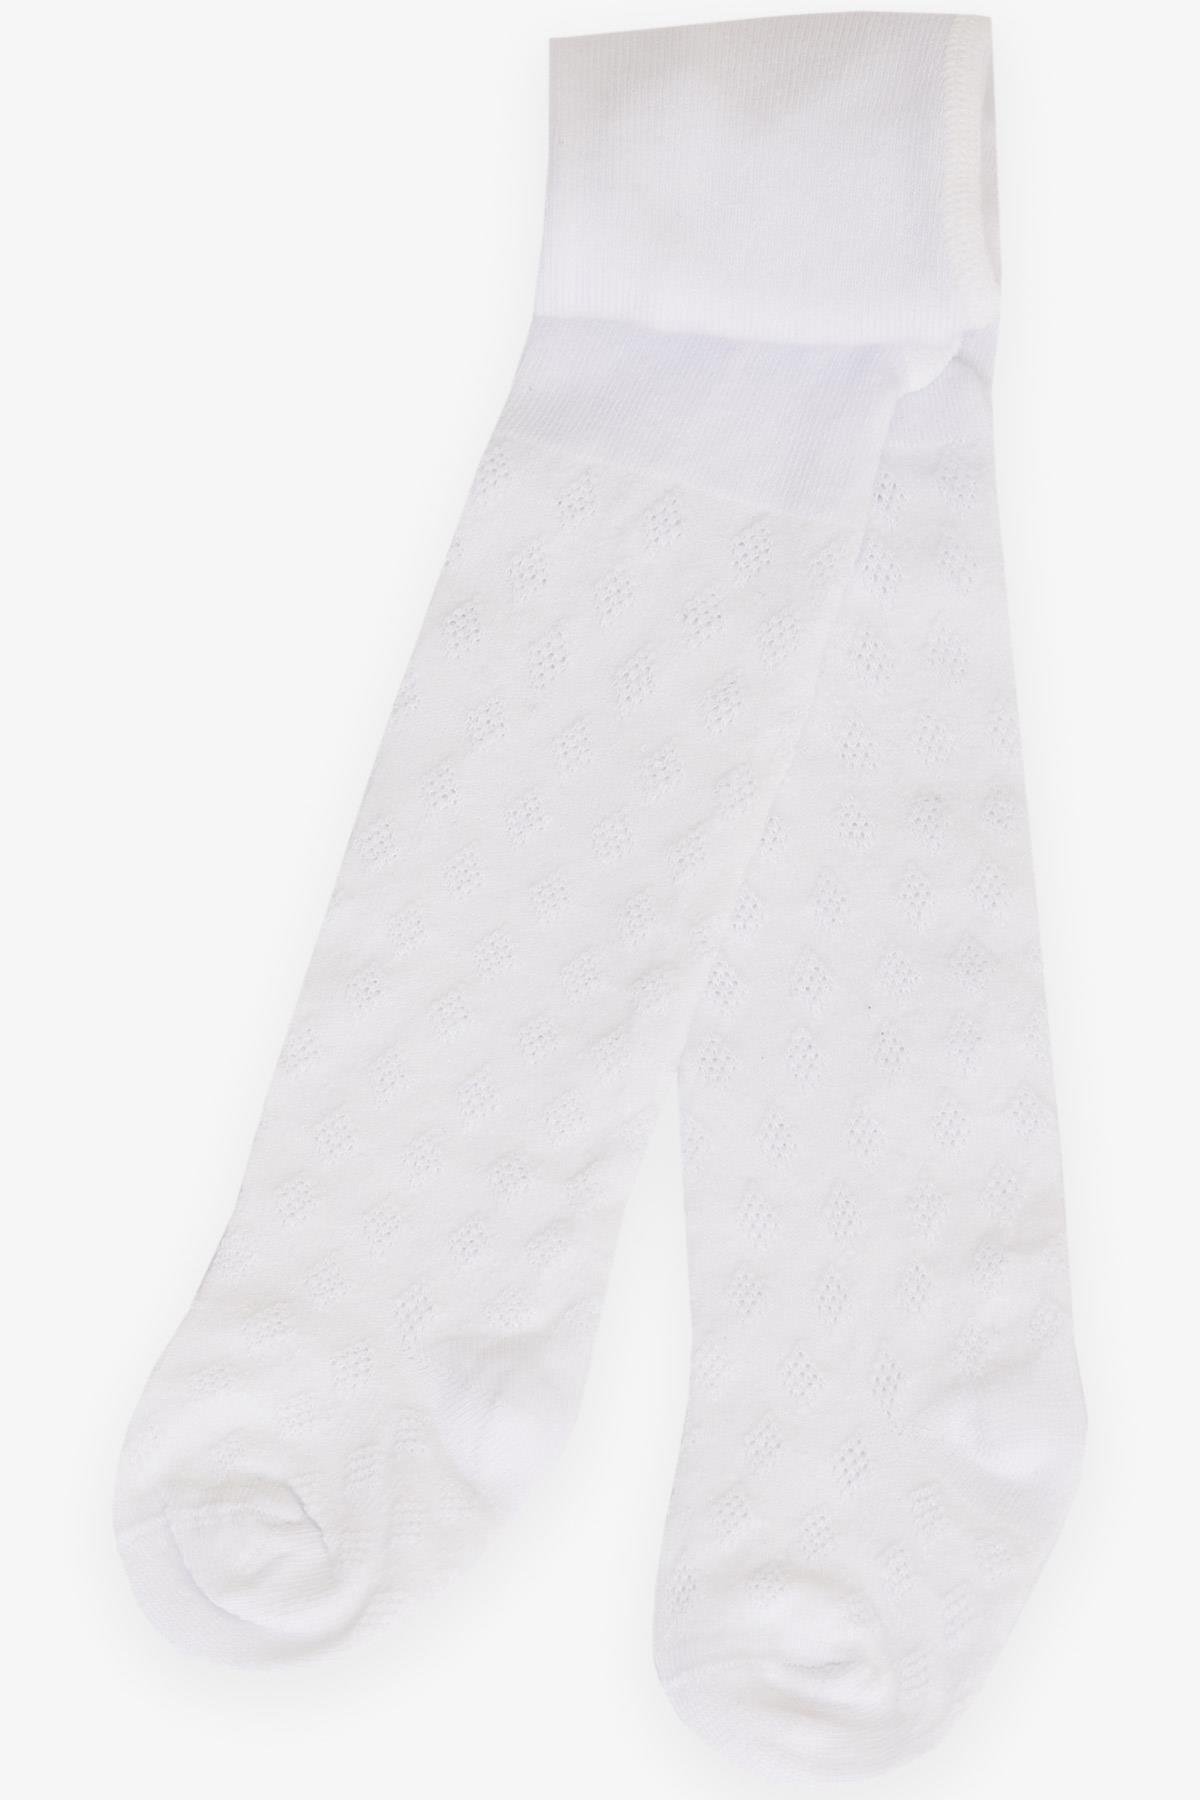 Kız Bebek Külotlu Çorap Desenli Beyaz 0-12 Ay - Bebek ve Çocuk Çorapları |  Breeze